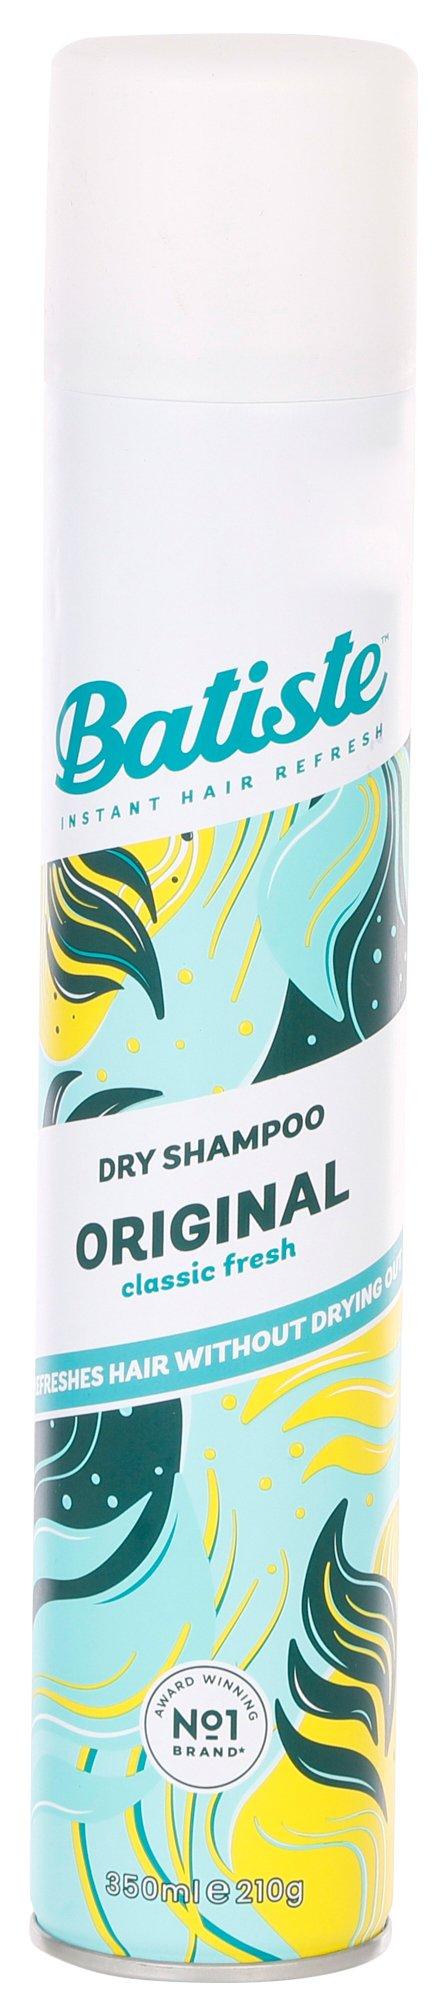 12 oz. Classic Fresh Dry Shampoo